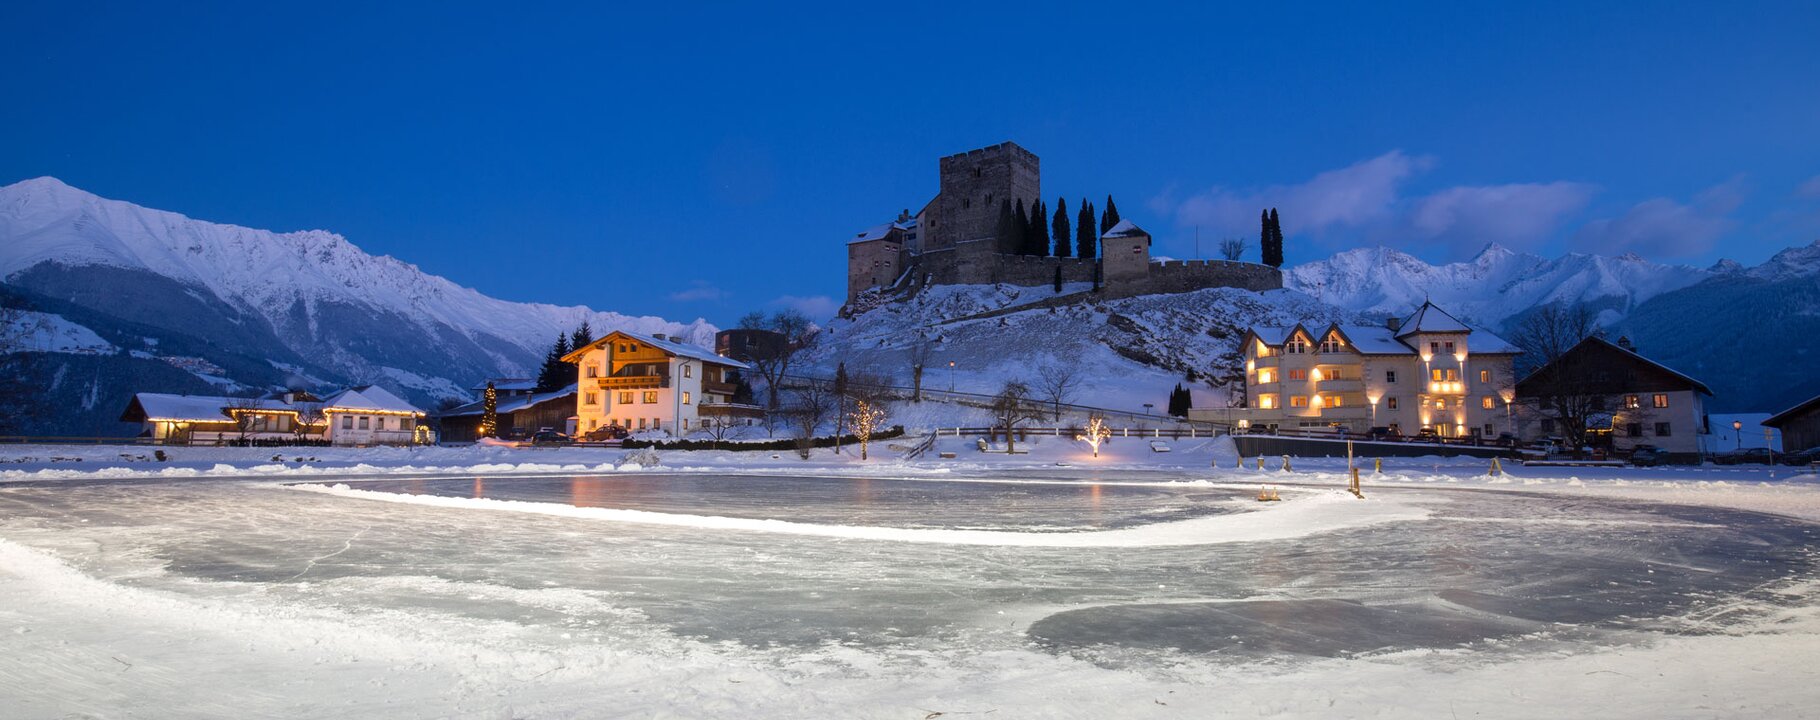 Eislaufplatz unterhalb der Burg Laudeck in Ladis | © Serfaus-Fiss-Ladis Marketing GmbH